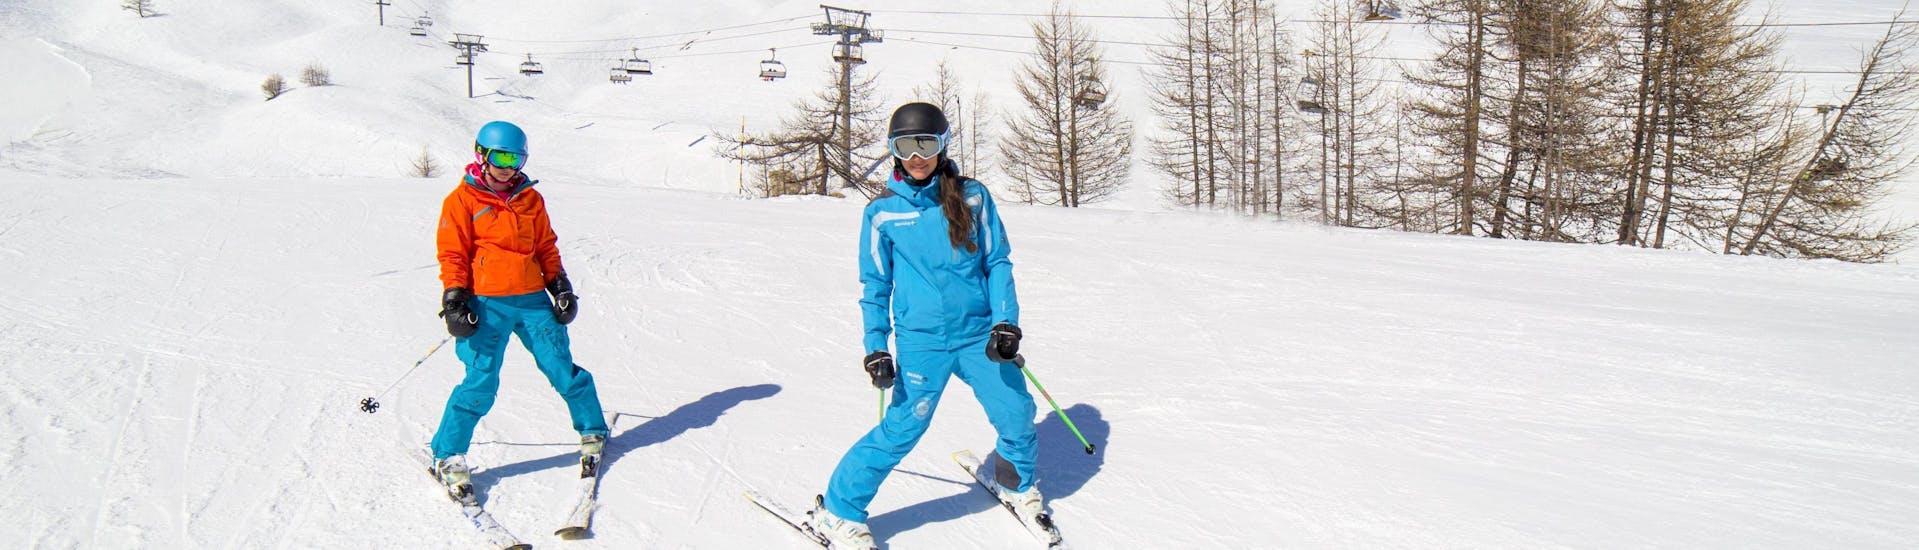 Private Skikurse für Erwachsene für alle Levels.